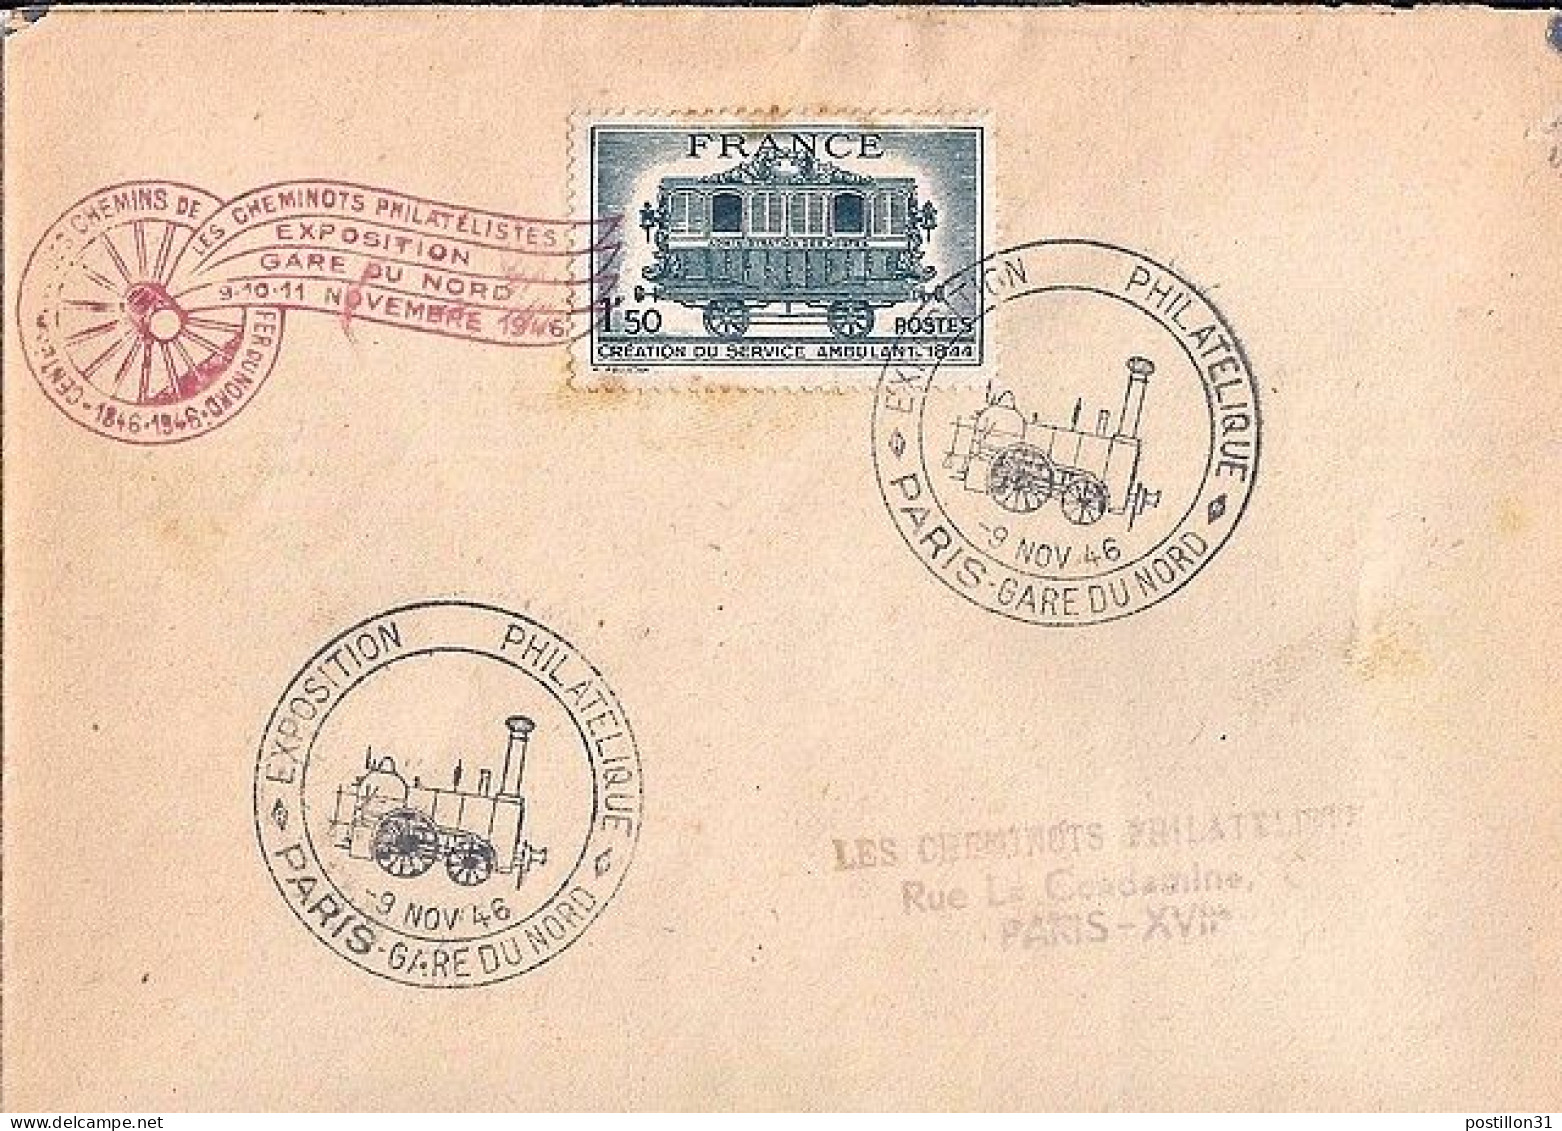 FRANCE N° 609 S/L. DE PARIS GARE DU NORD/9.11.46 - Lettres & Documents